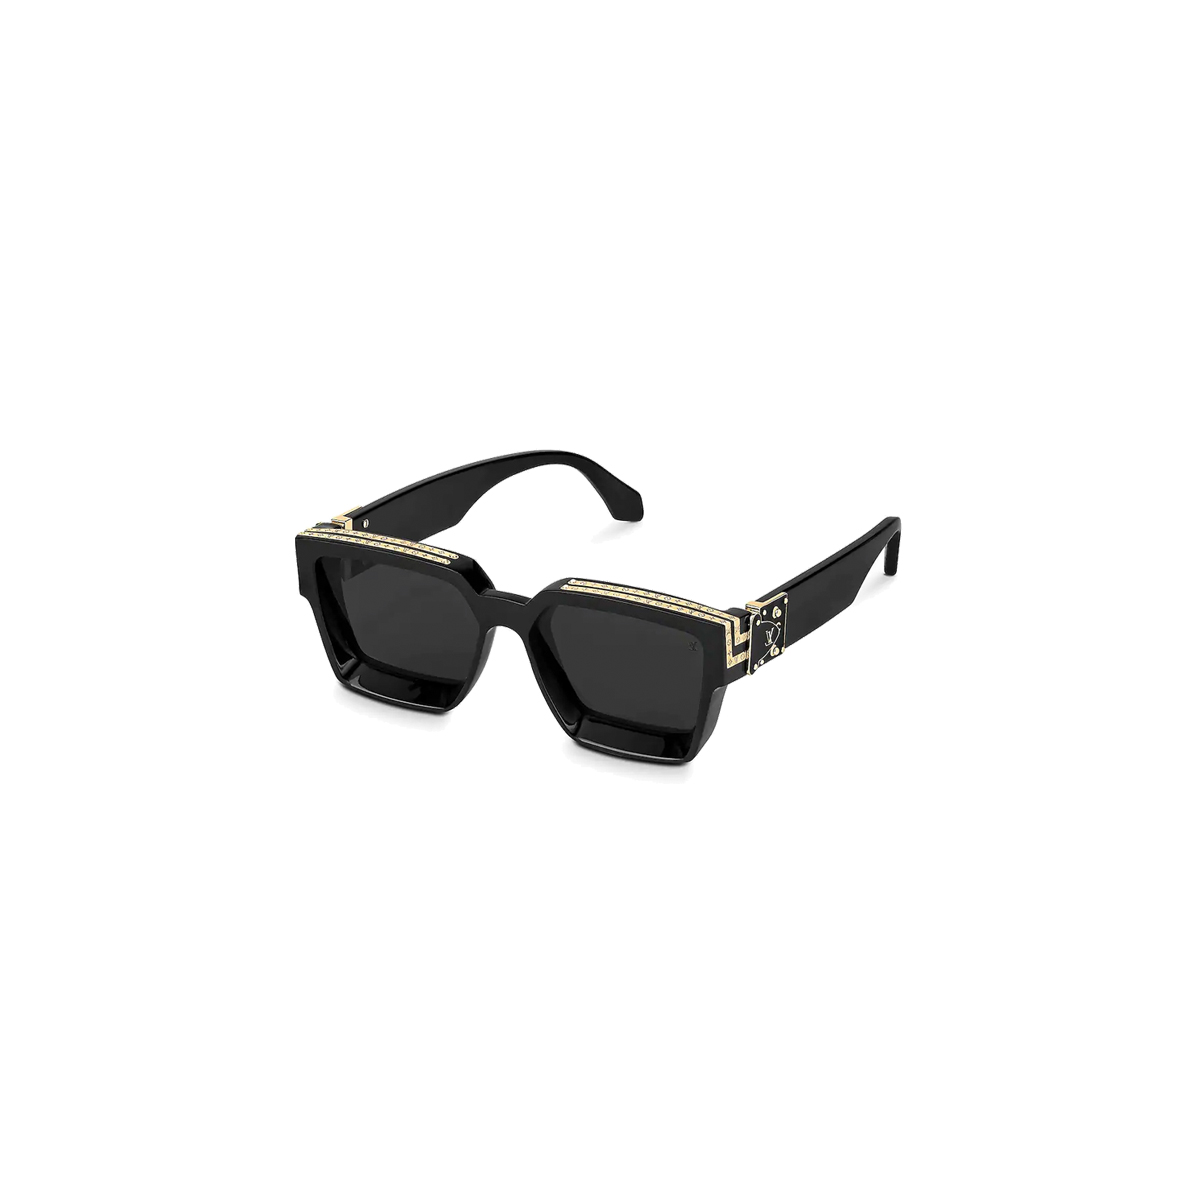 Louis Vuitton 2019 1.1 Millionaires Sunglasses - White Sunglasses